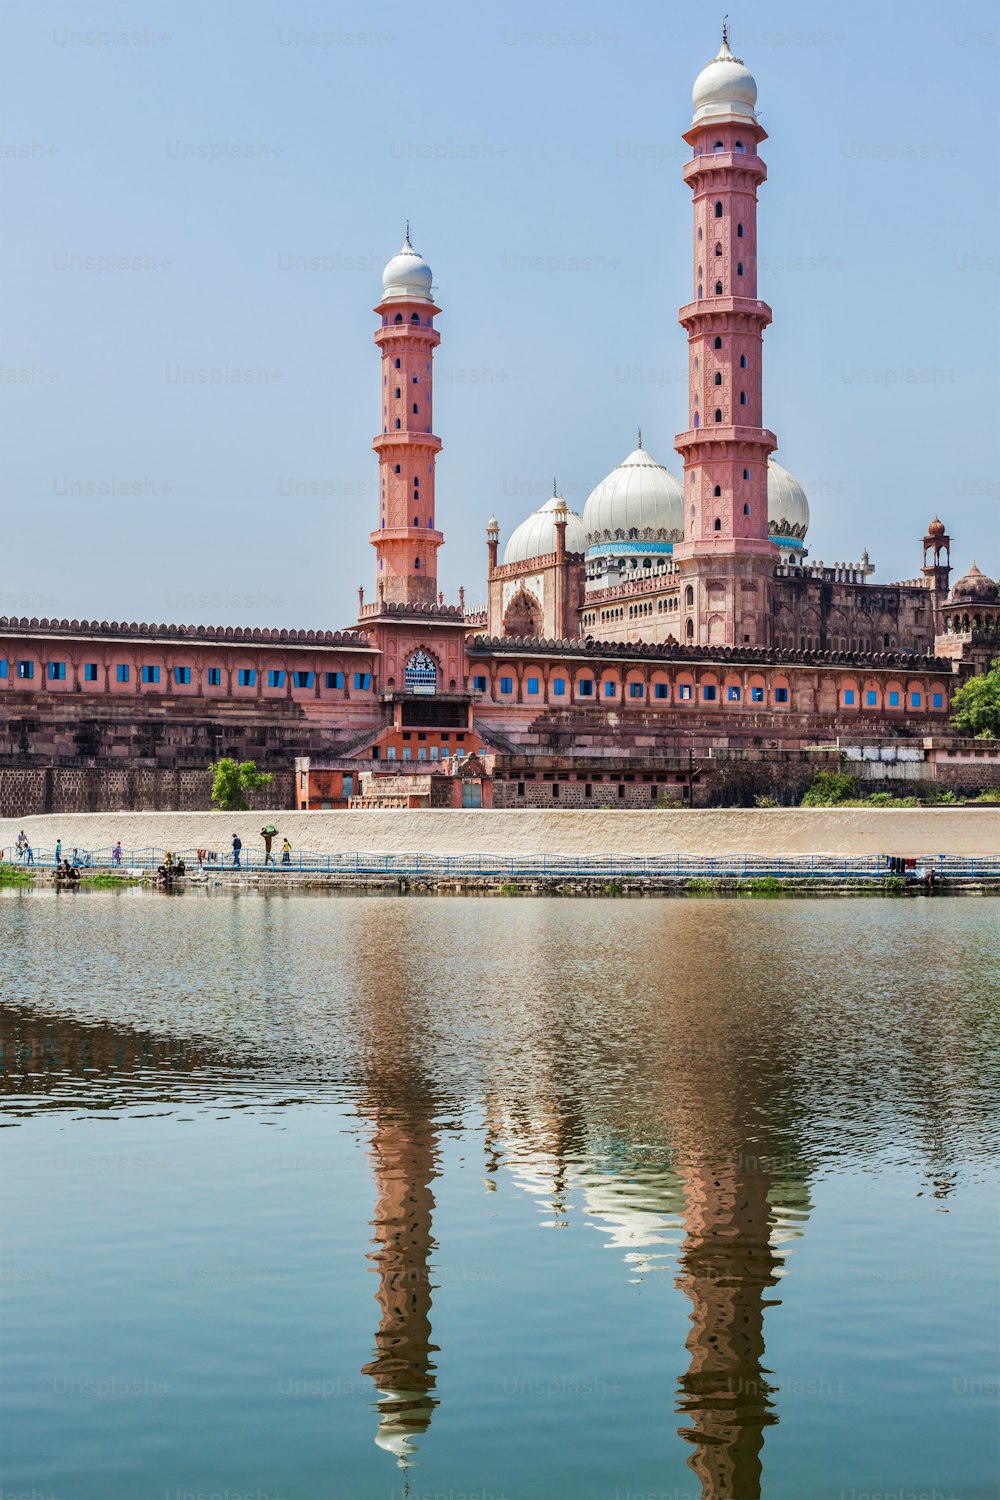 タージ・ウル・マサジド(タージ・ウル・マスジドとも綴られる) - インド最大のモスク。ボパール、マディヤプラデーシュ州、インド